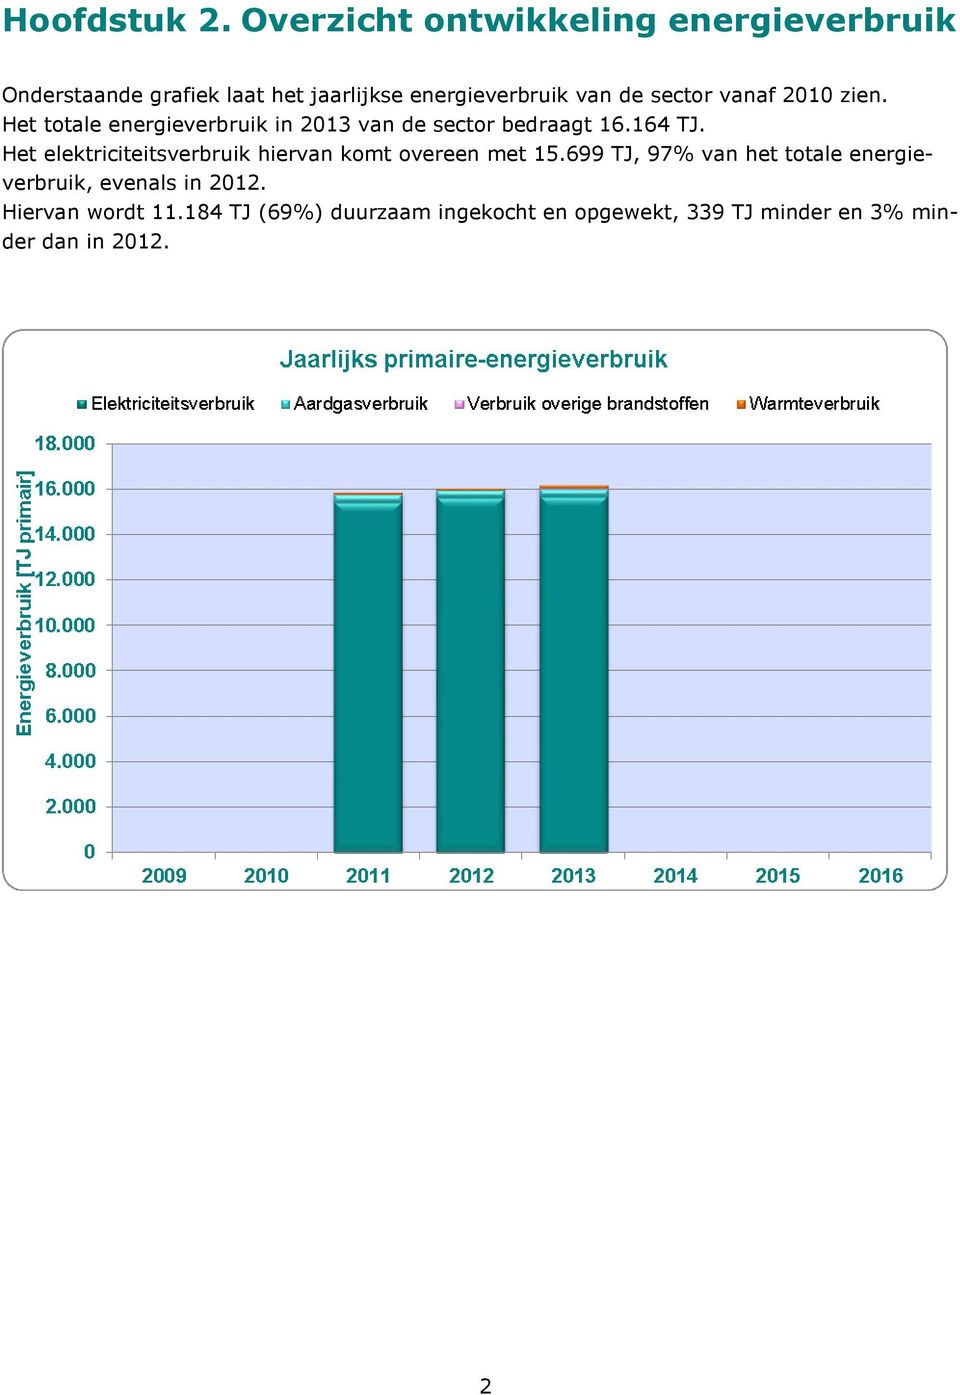 sector vanaf 2010 zien. Het totale energieverbruik in 2013 van de sector bedraagt 16.164 TJ.